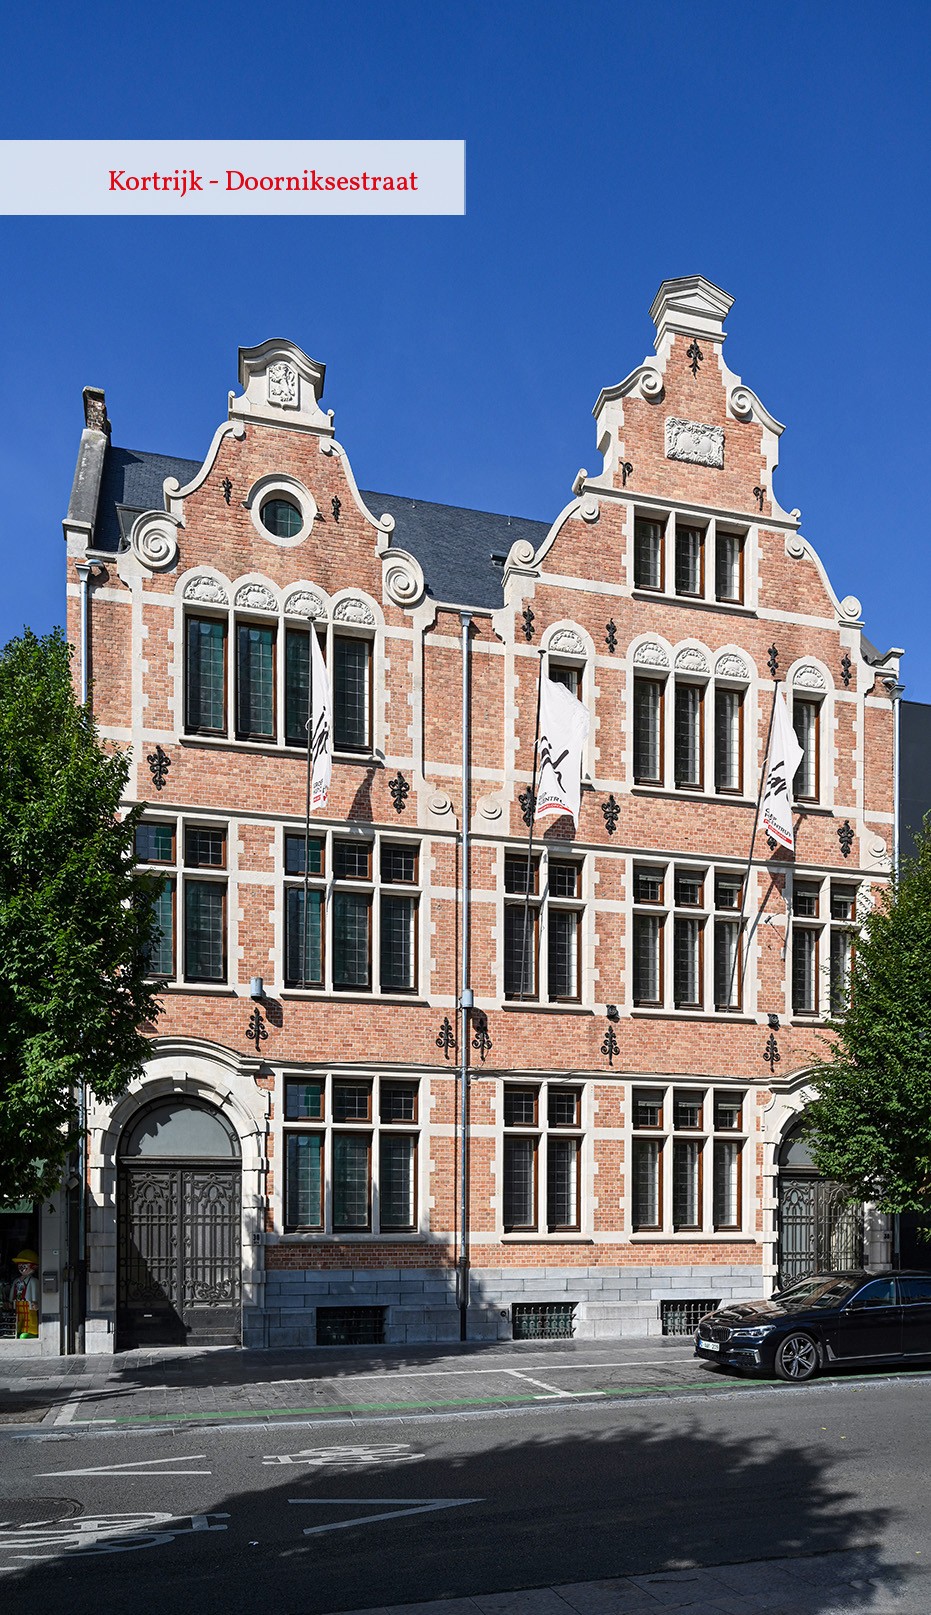 Kortrijk - Sint-Jorisstraat / Doorniksestraat